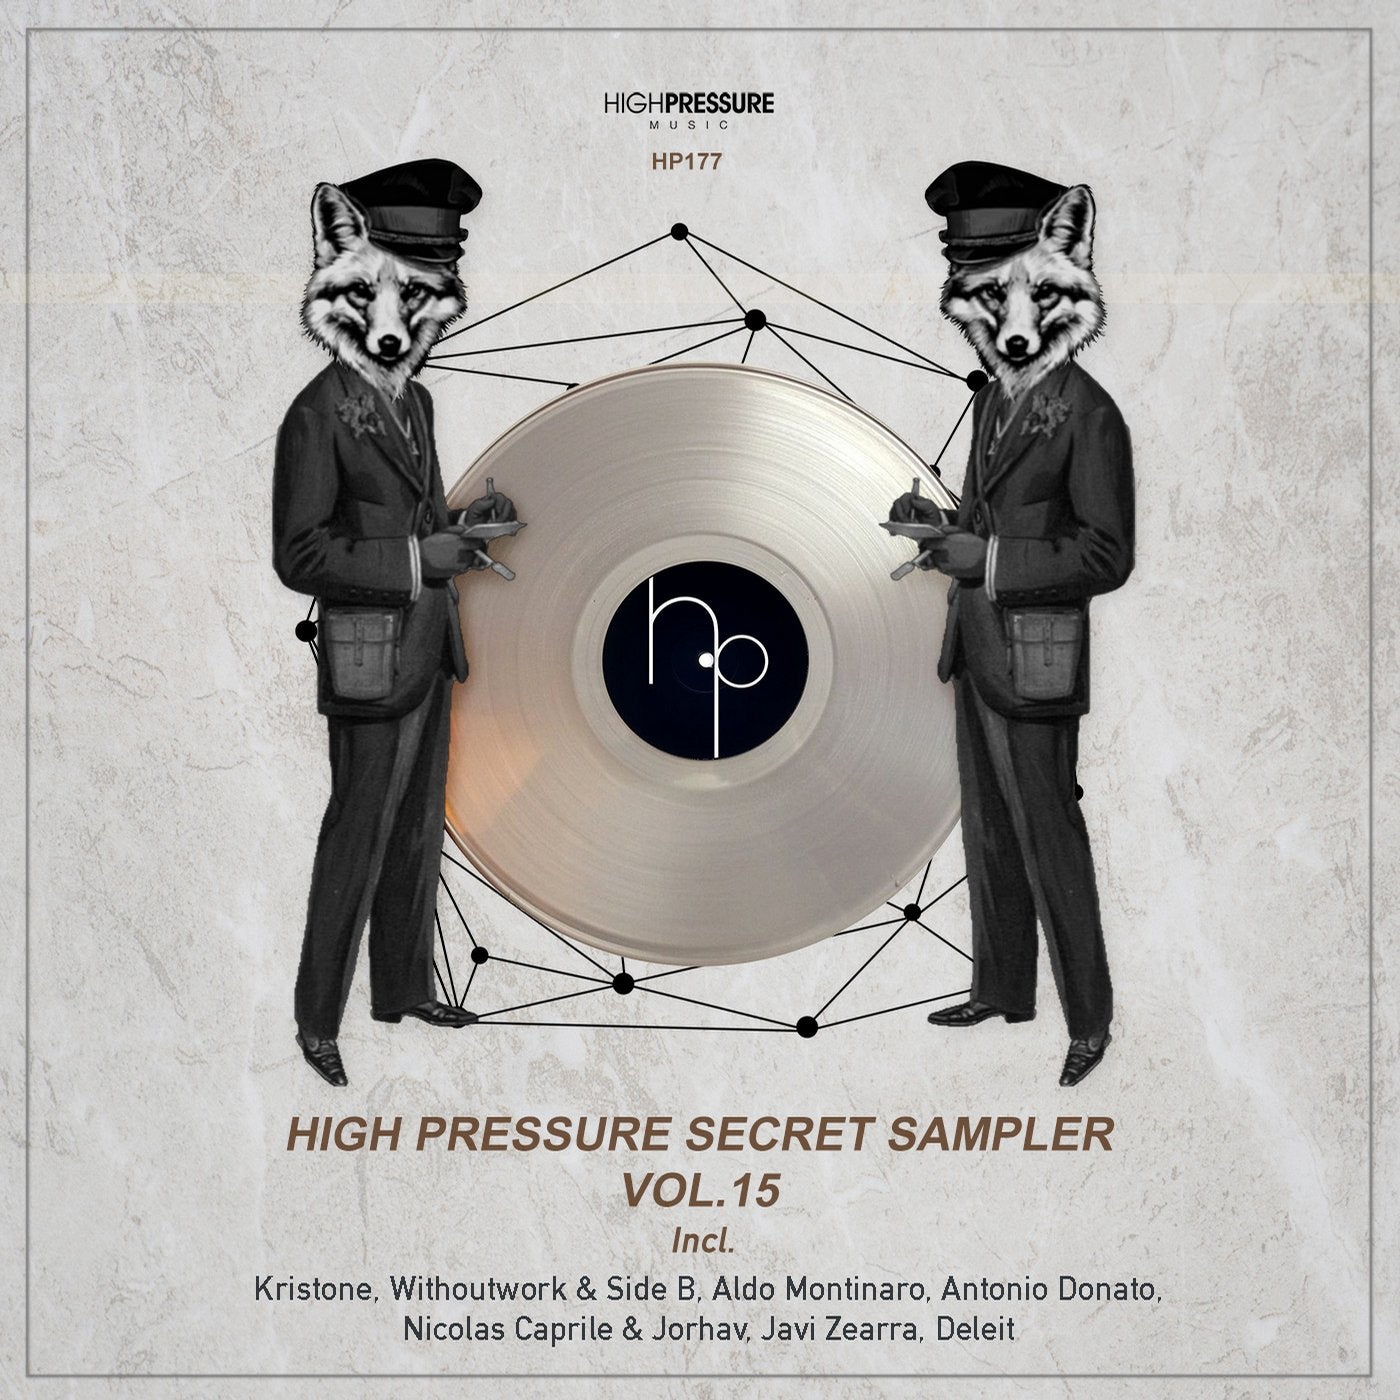 High Pressure Secret Sampler Vol.15